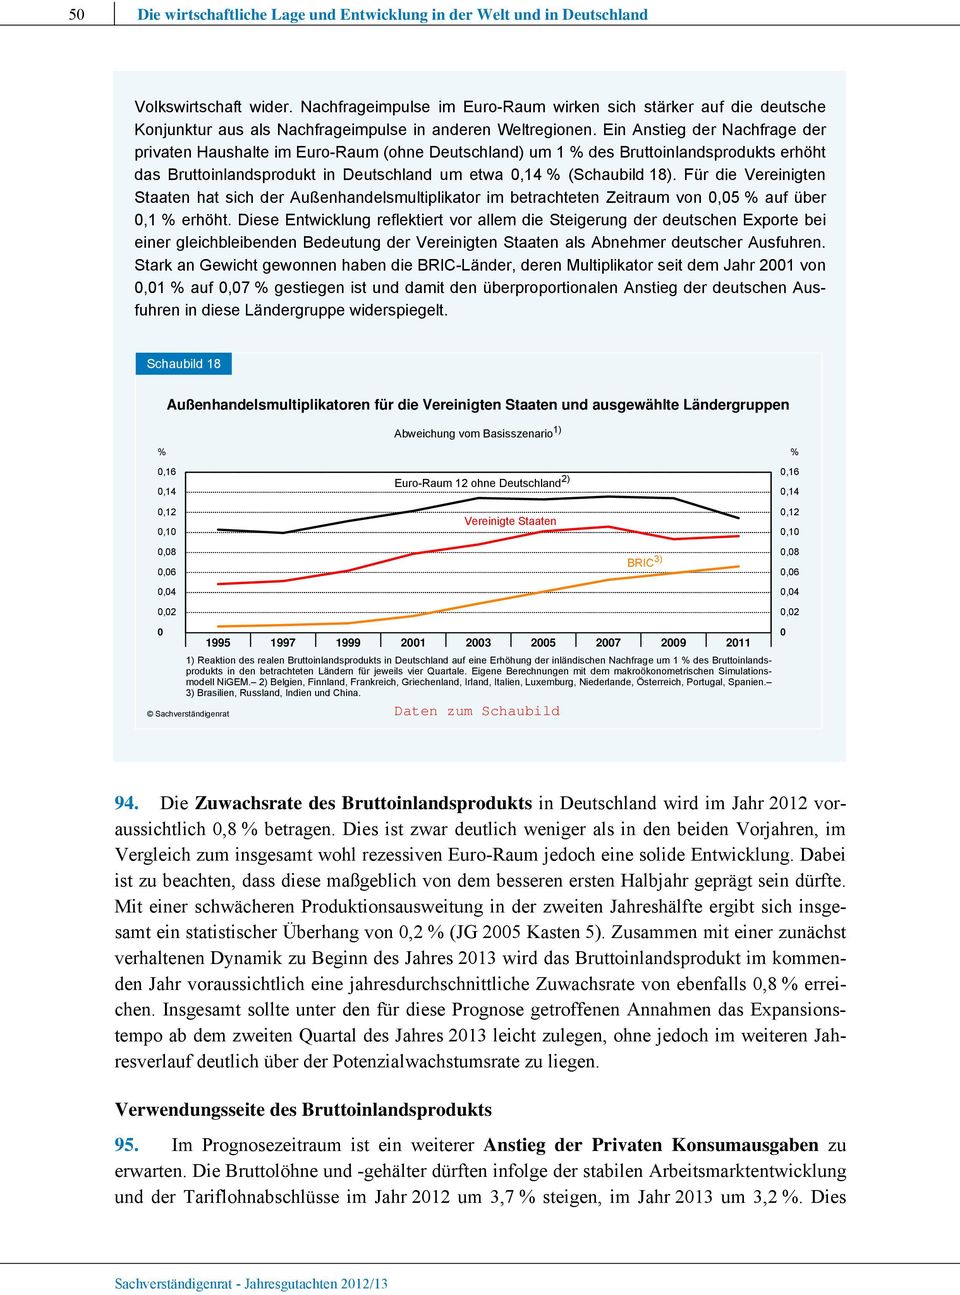 Ein Anstieg der Nachfrage der privaten Haushalte im Euro-Raum (ohne Deutschland) um 1 % des Bruttoinlandsprodukts erhöht das Bruttoinlandsprodukt in Deutschland um etwa,14 % (Schaubild 18).